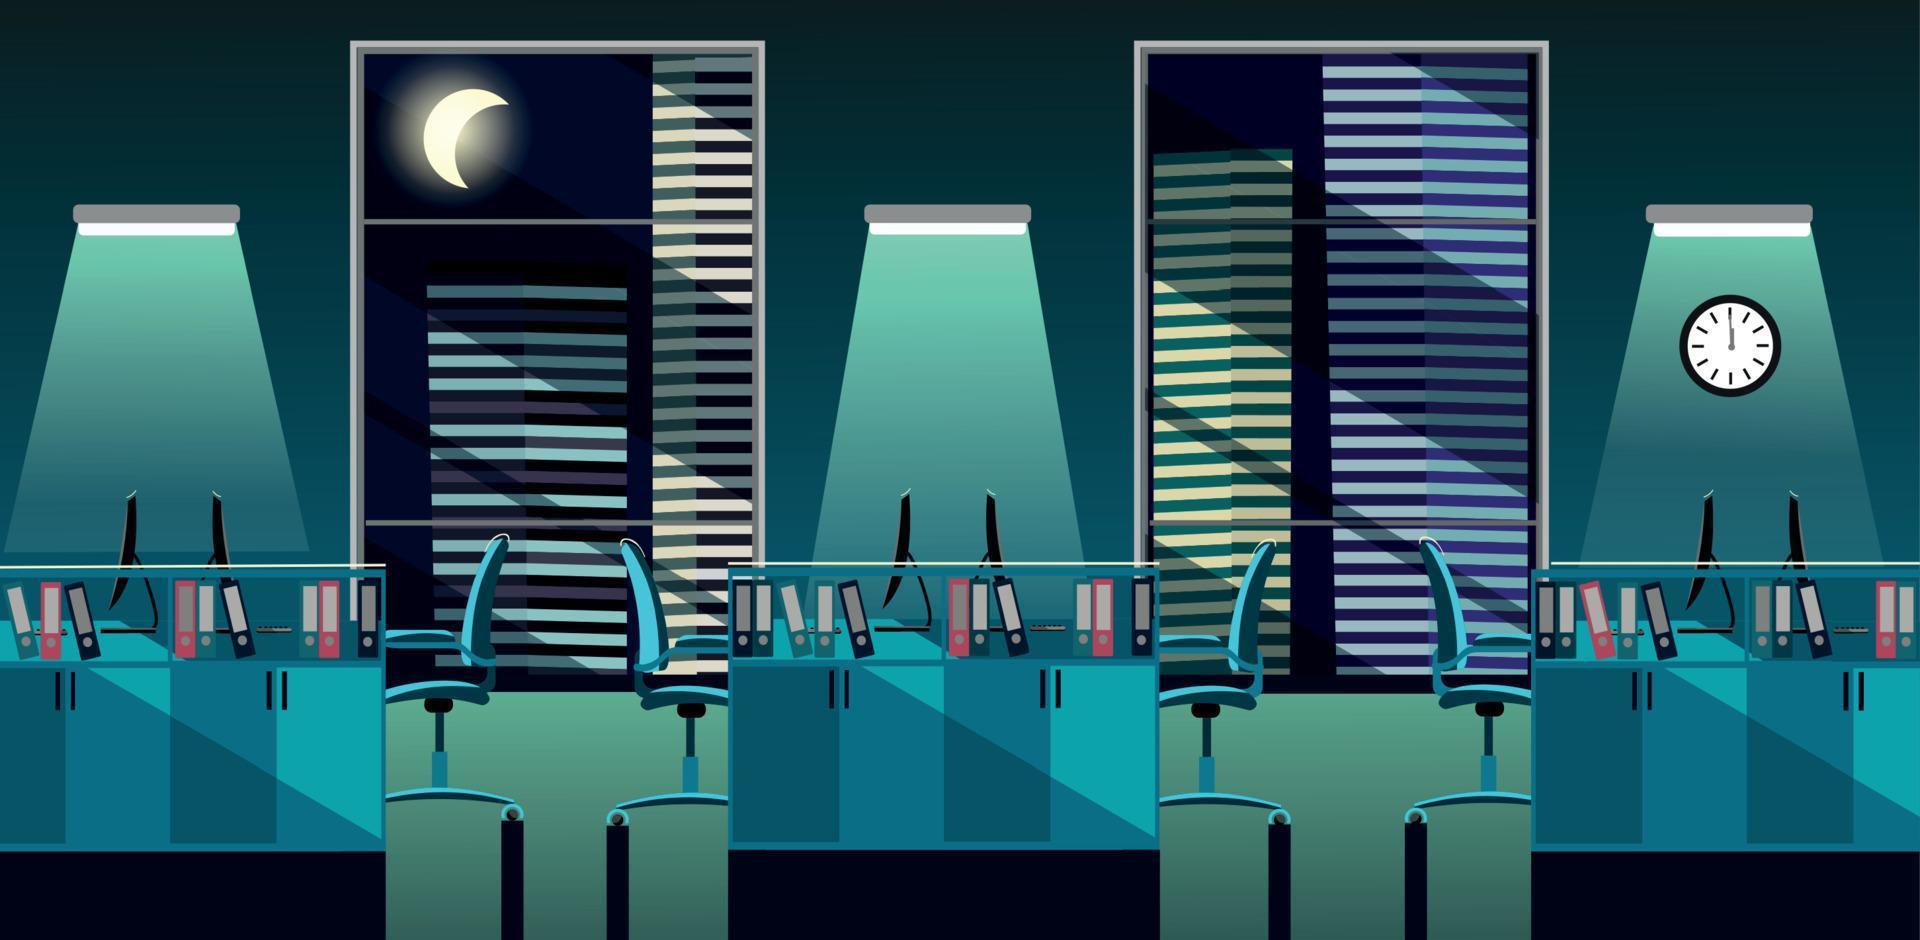 ilustração em vetor plana do interior da sala de escritório moderno com grandes janelas em arranha-céu com mesas e pc à noite. espaço aberto para 6 pessoas. ordem em mesas, pastas de documentos, luz da lua turquesa